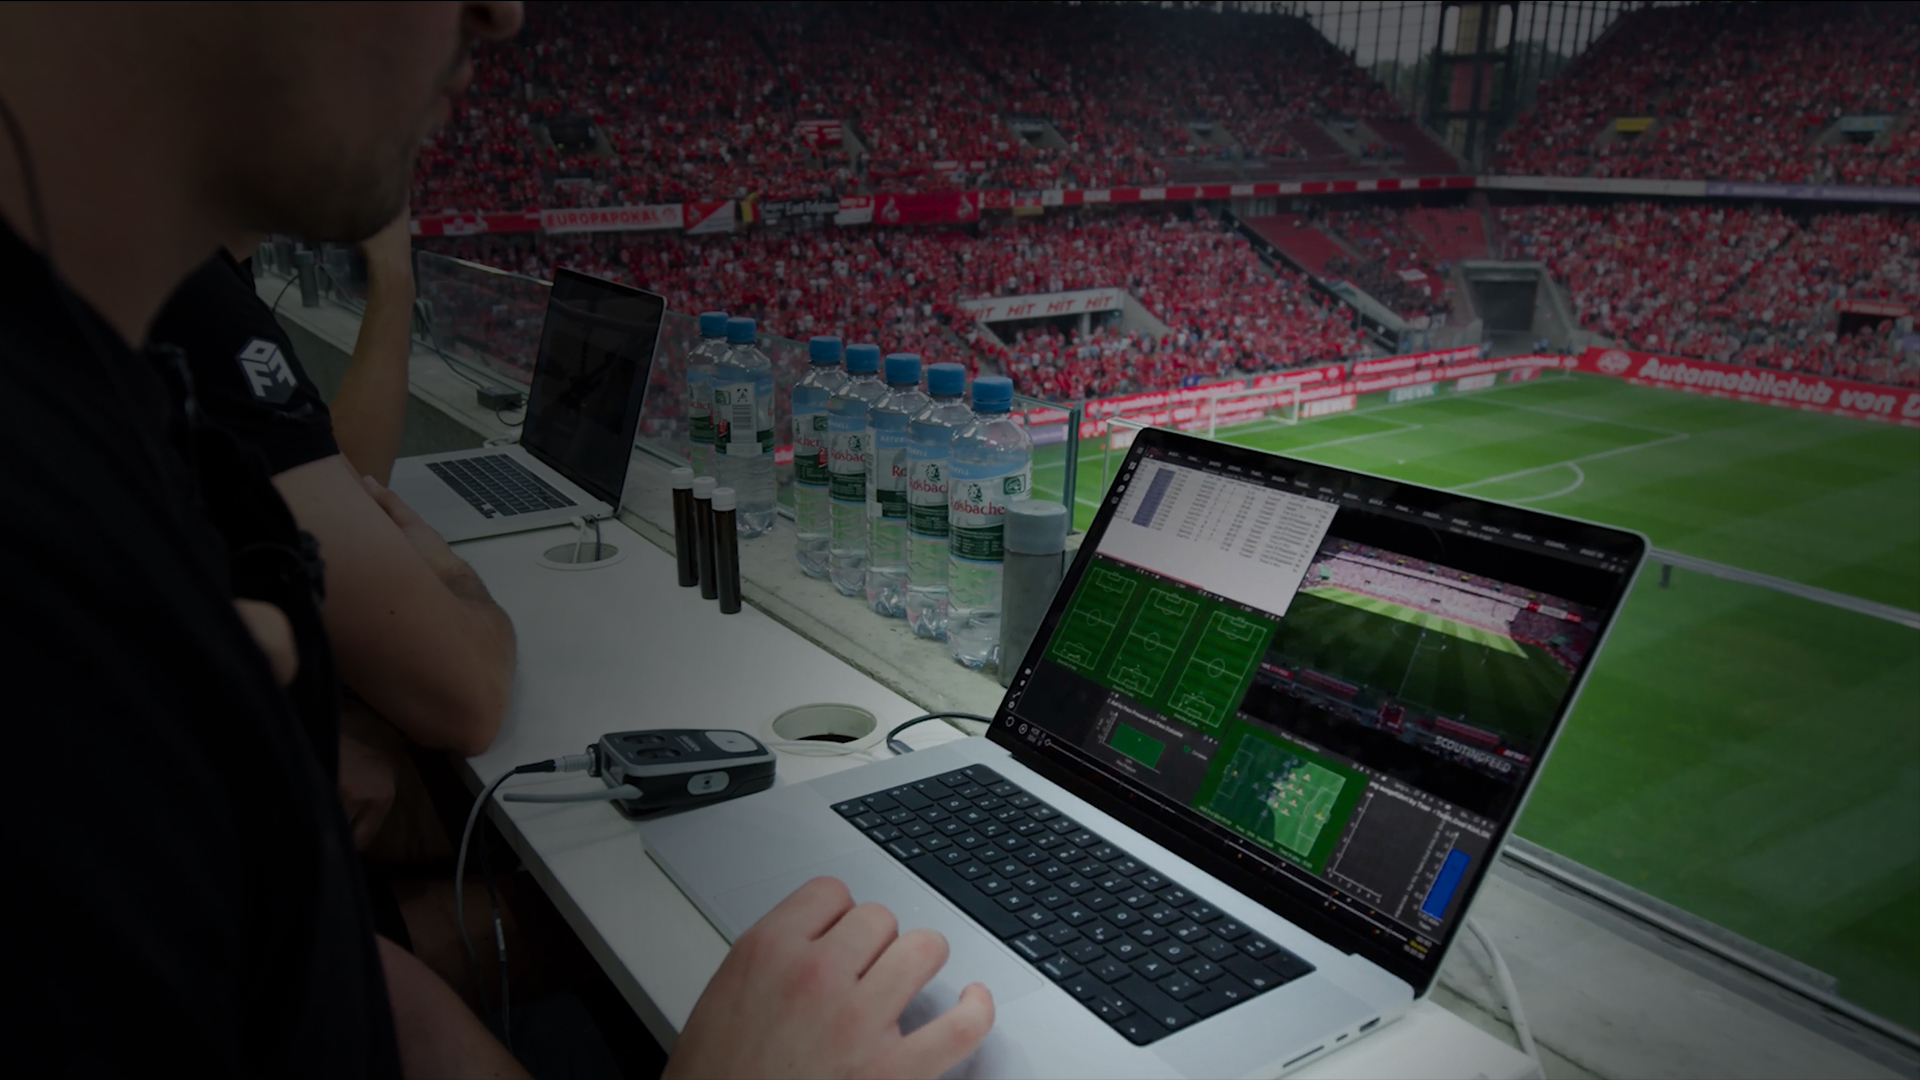 Uma visão abrangente da configuração da análise ao vivo do Catapult durante uma partida de futebol, destacando vídeo em tempo real e integração de dados.